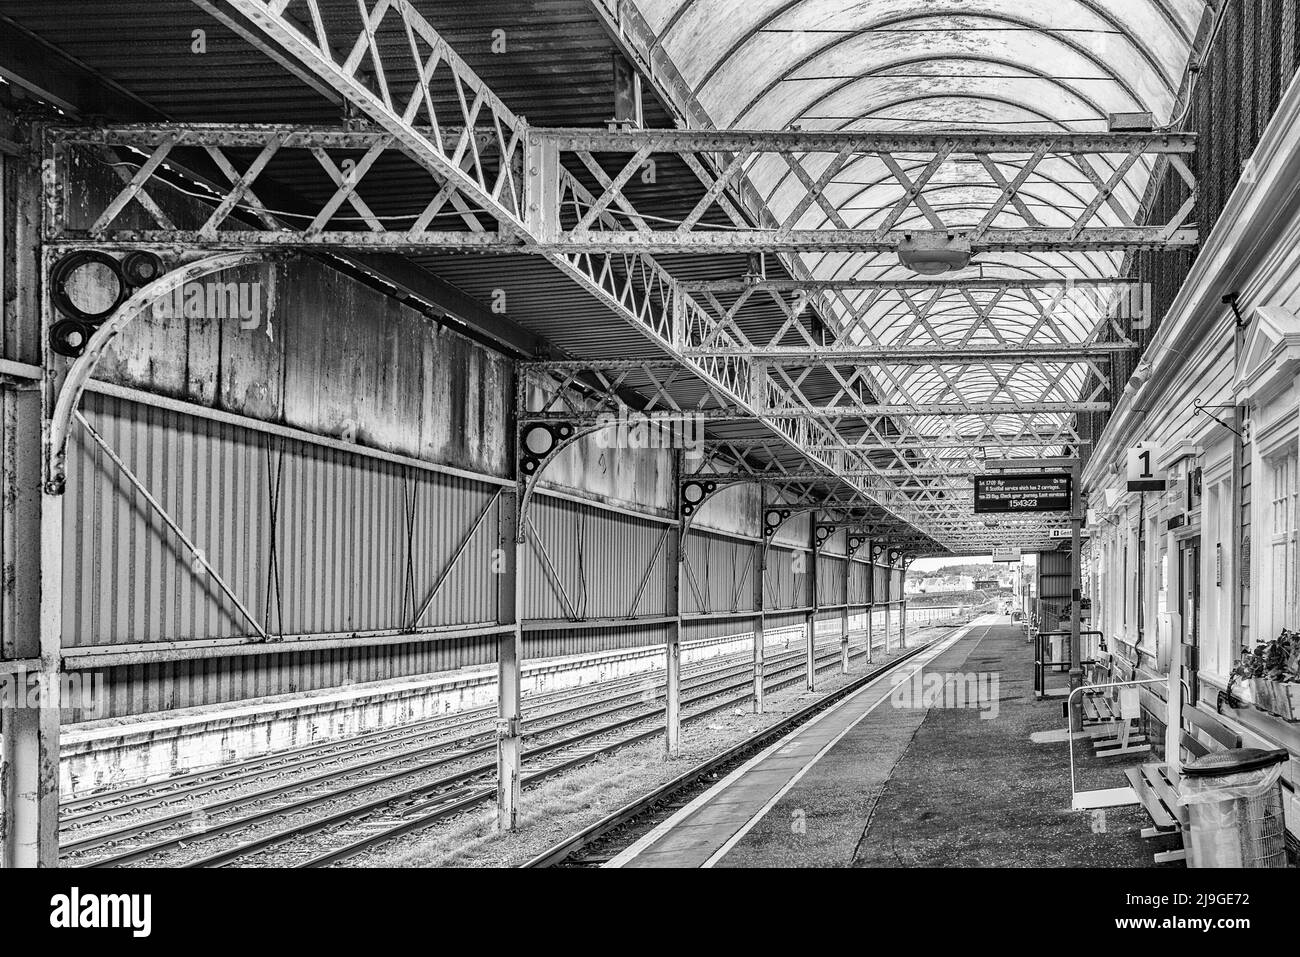 Bahnhof Stranraer (manchmal auch als Stranraer Harbour Railway Station bekannt), als Gegenseite zum Stadtbahnhof.seine Gebäude stammen aus dem Jahr 1877. Stockfoto